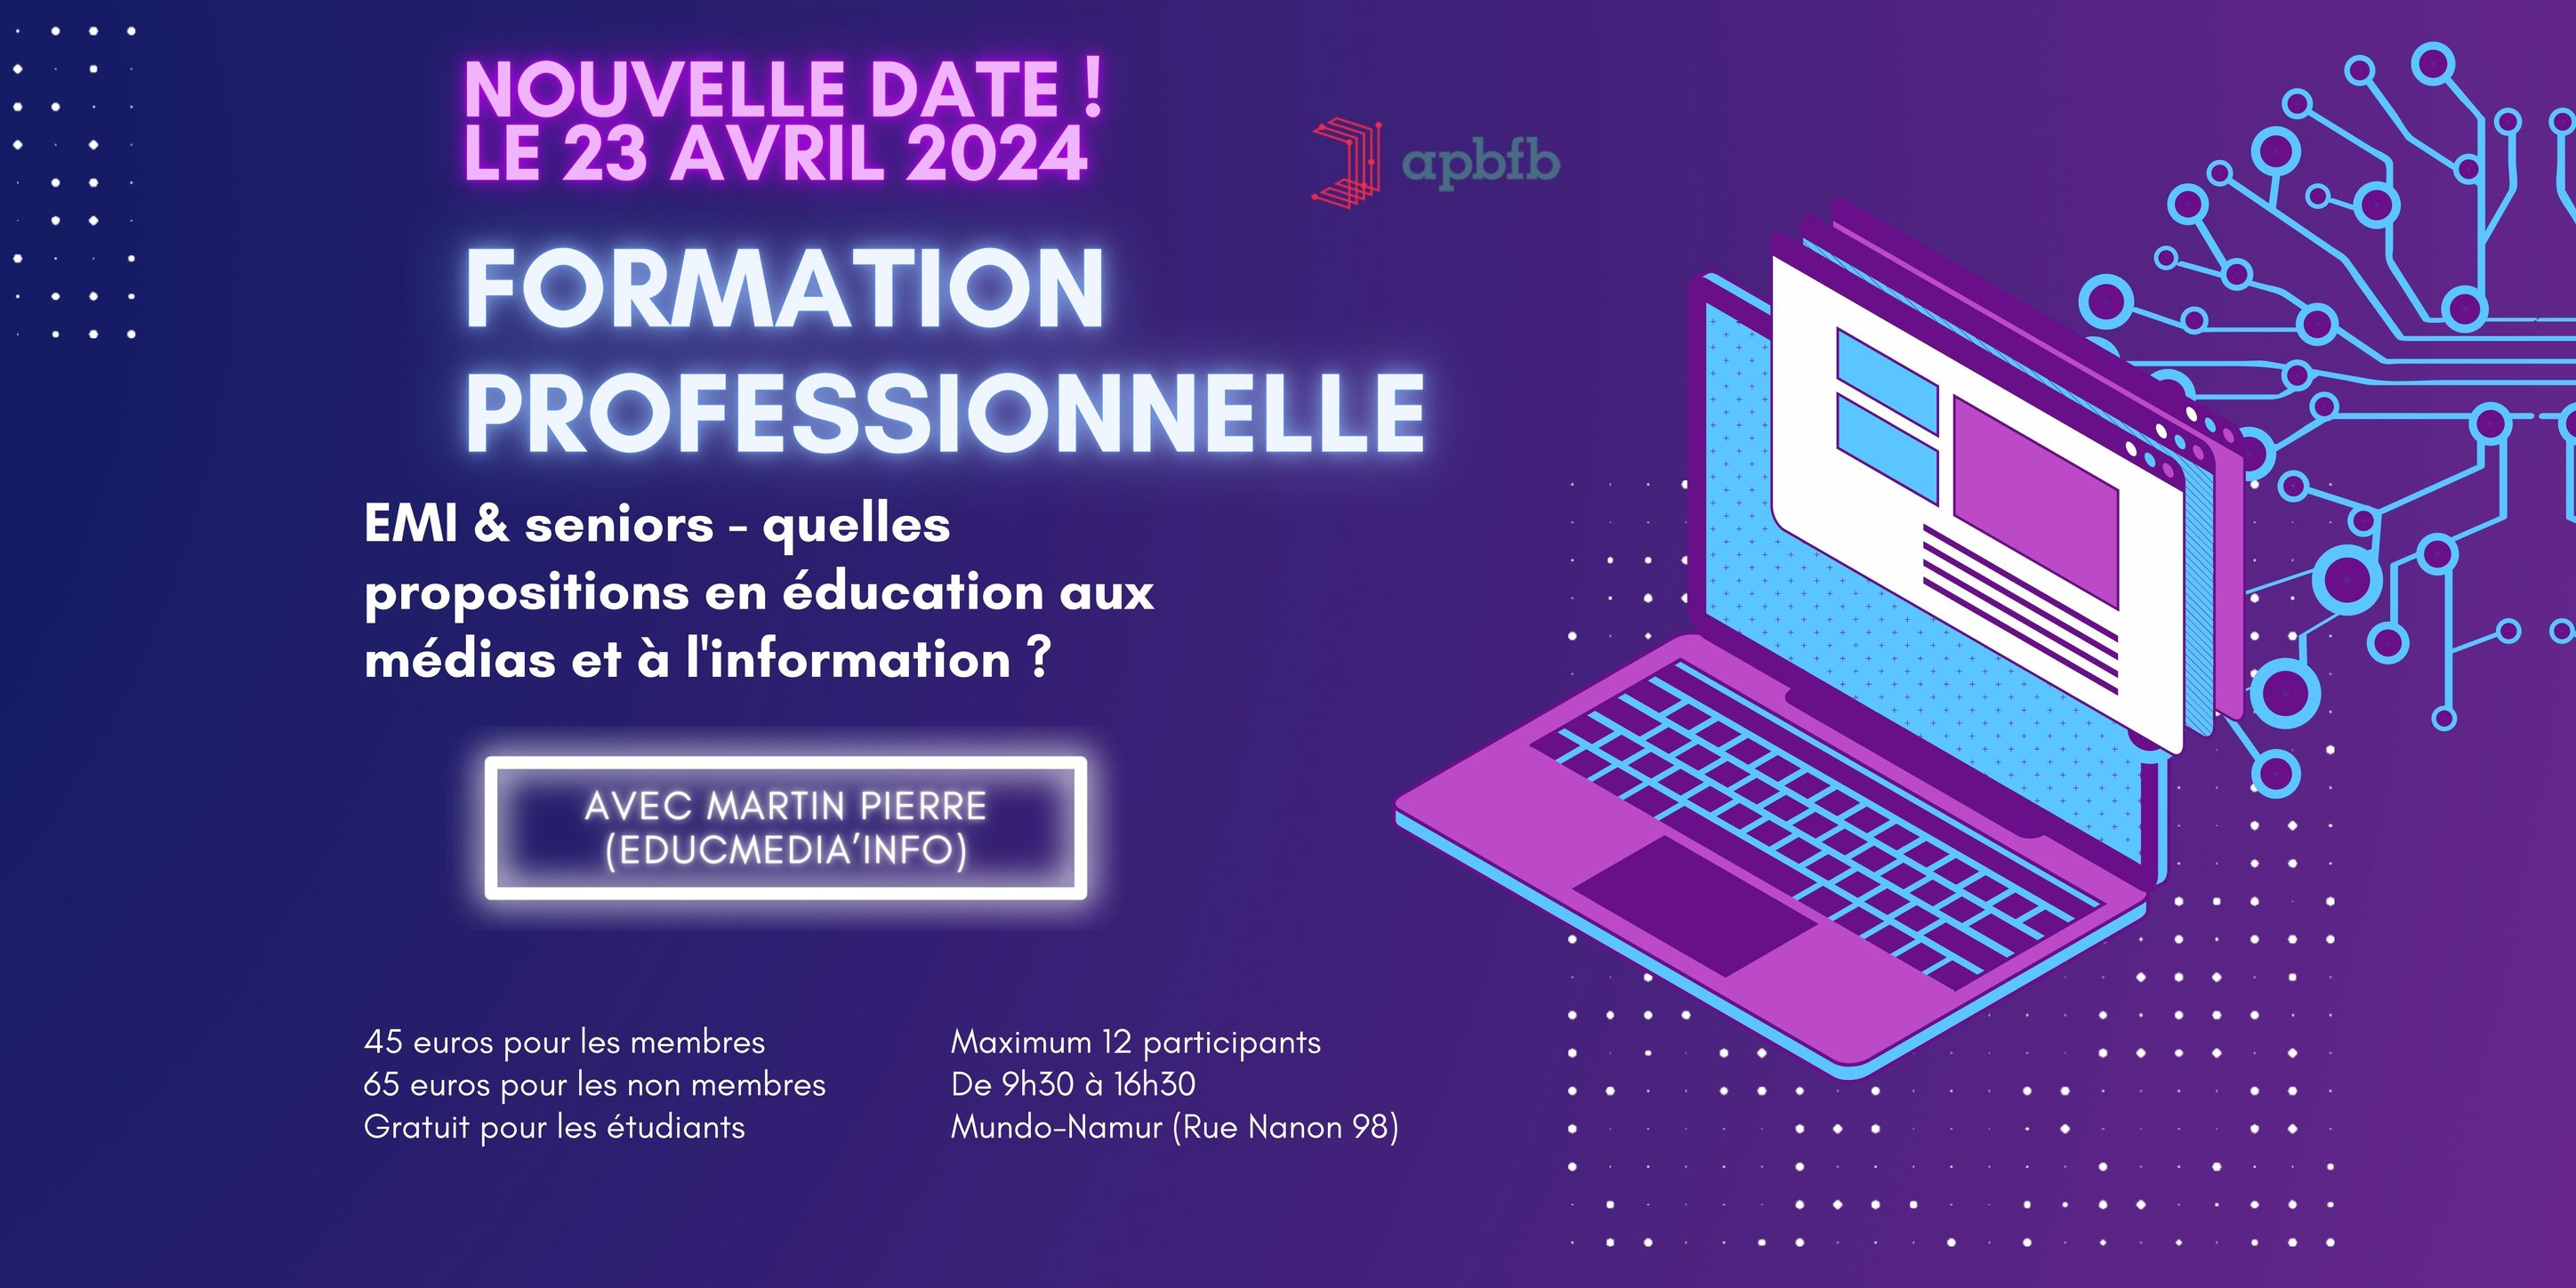 Apbfb - Association des professionnels des bibliothèques francophones de Belgique